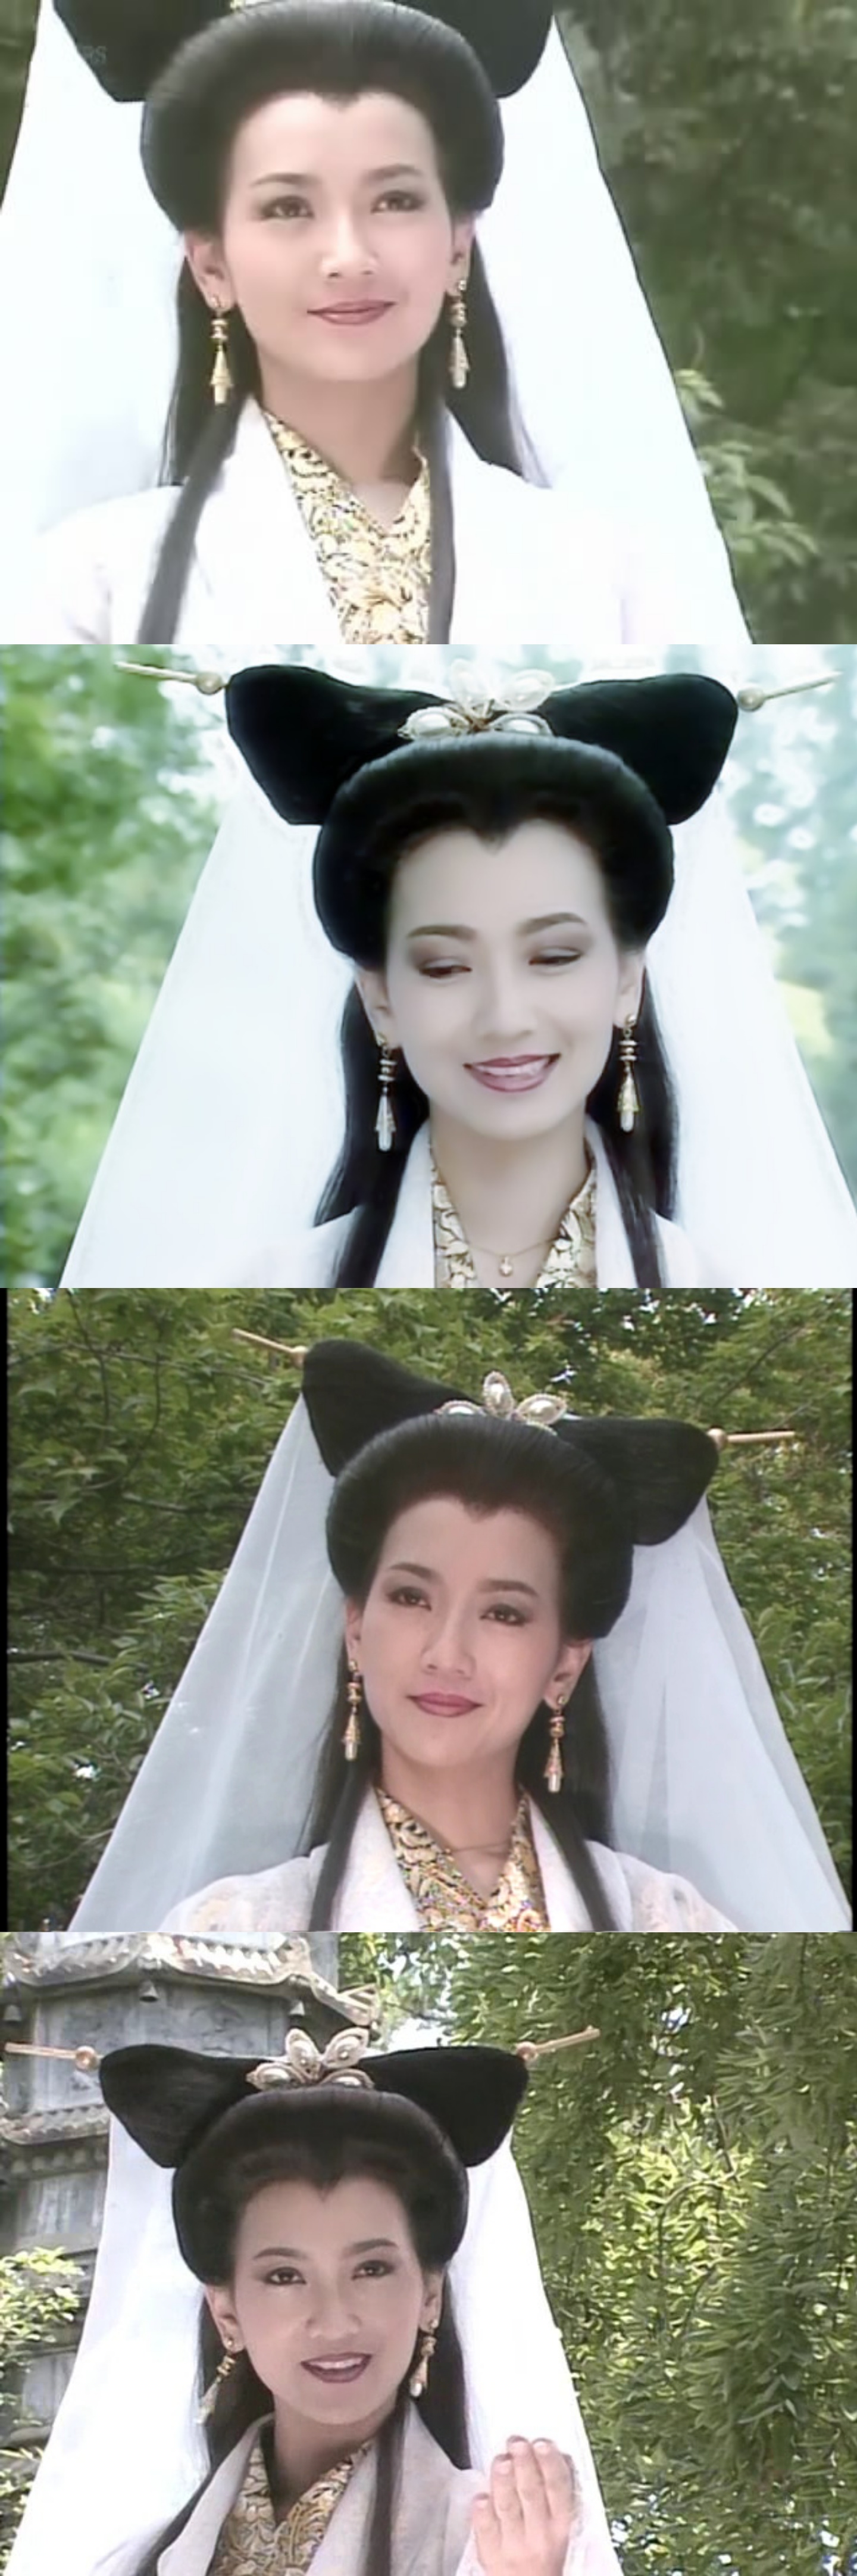 《新白娘子传奇》中的赵雅芝那时候白衣飘飘,端庄优雅的白素贞.